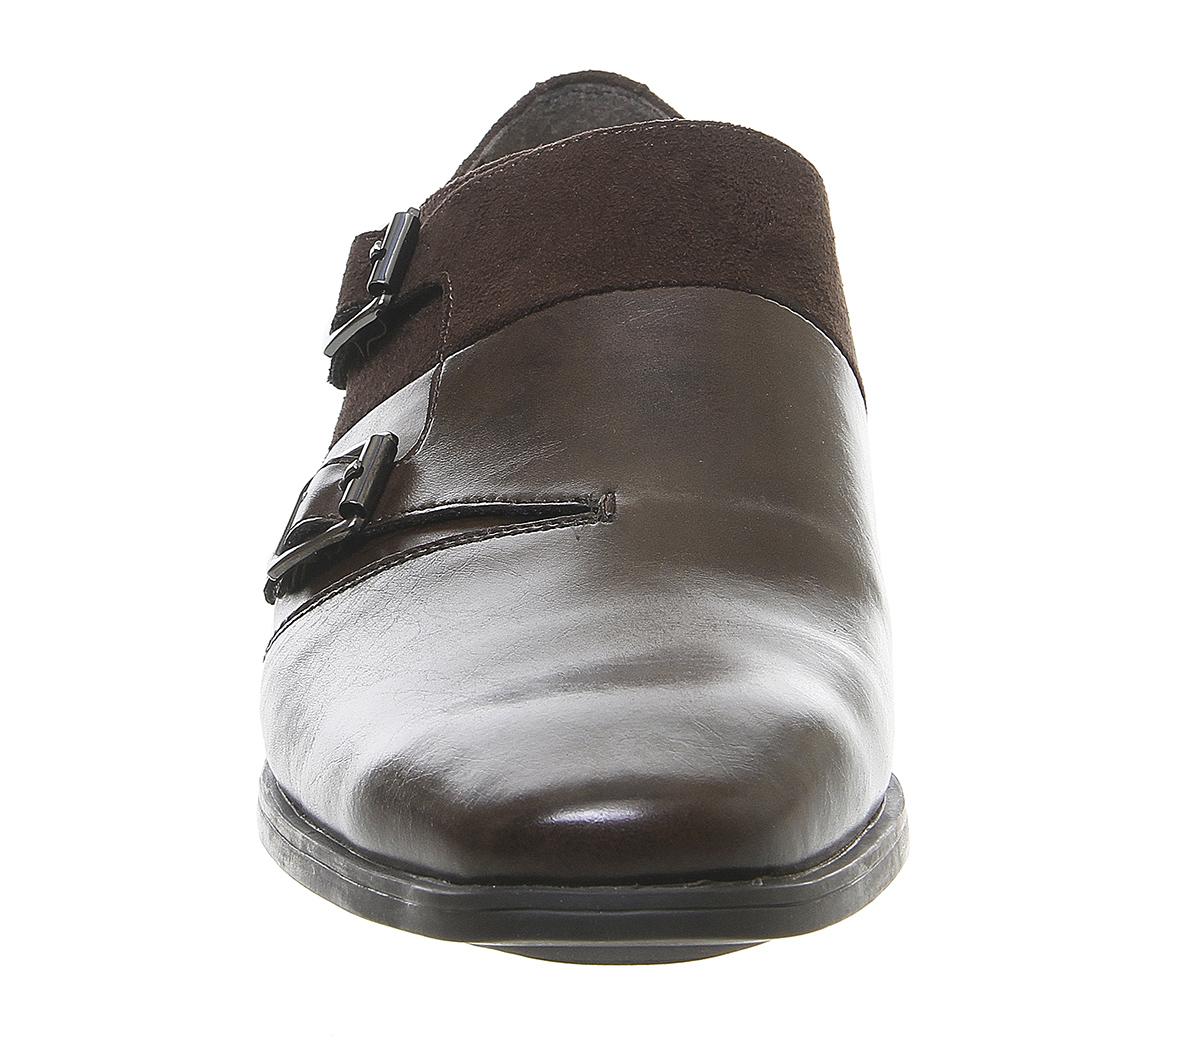 Office Mark Monk Shoes Brown - Men’s Smart Shoes